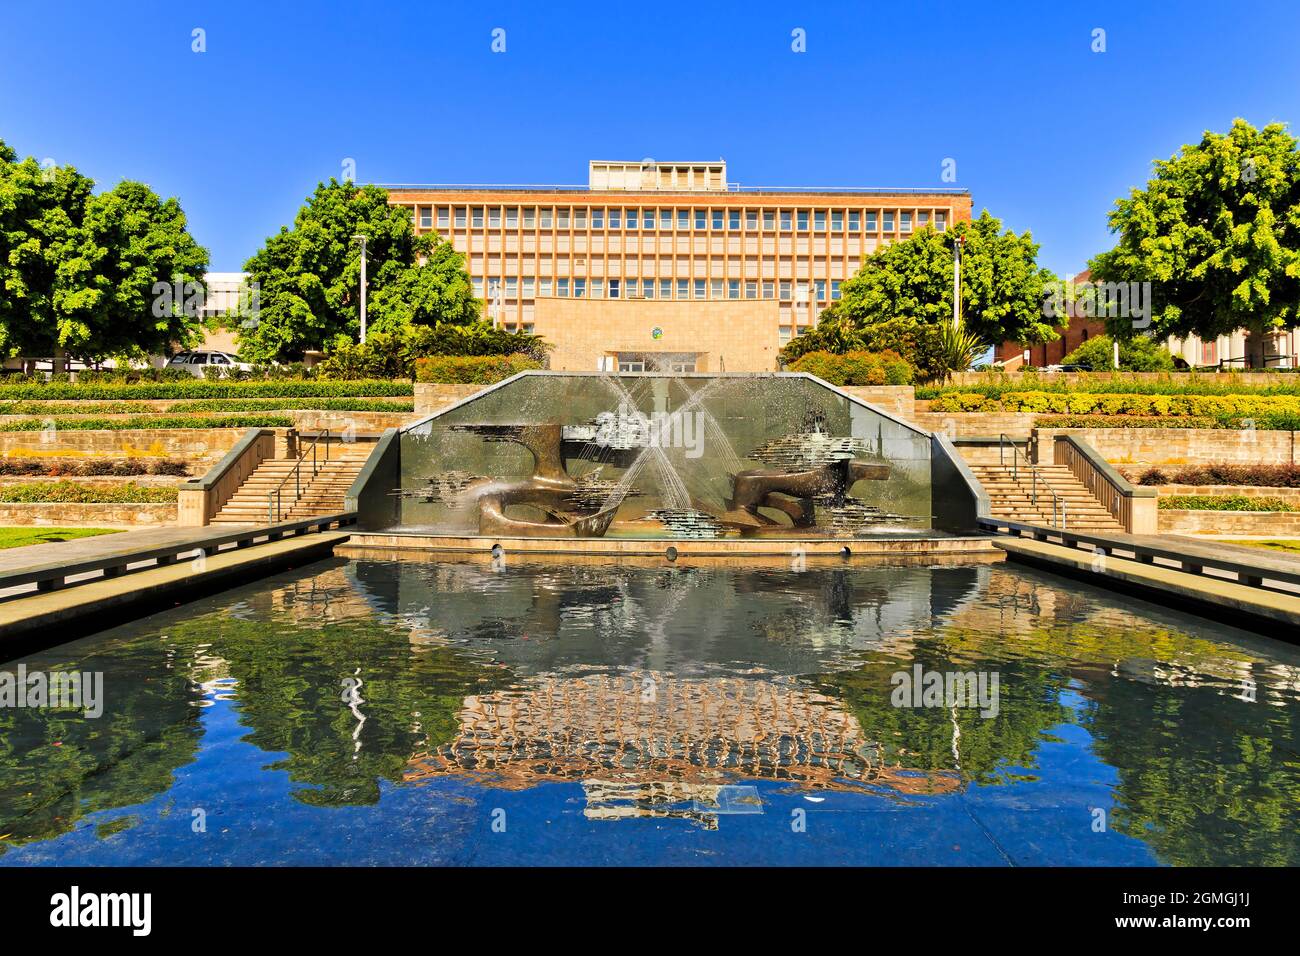 Edificio pubblico del memoriale di guerra nel centro della città di Newcastle con piscina e fontana in piedi, NSW, Australia. Foto Stock